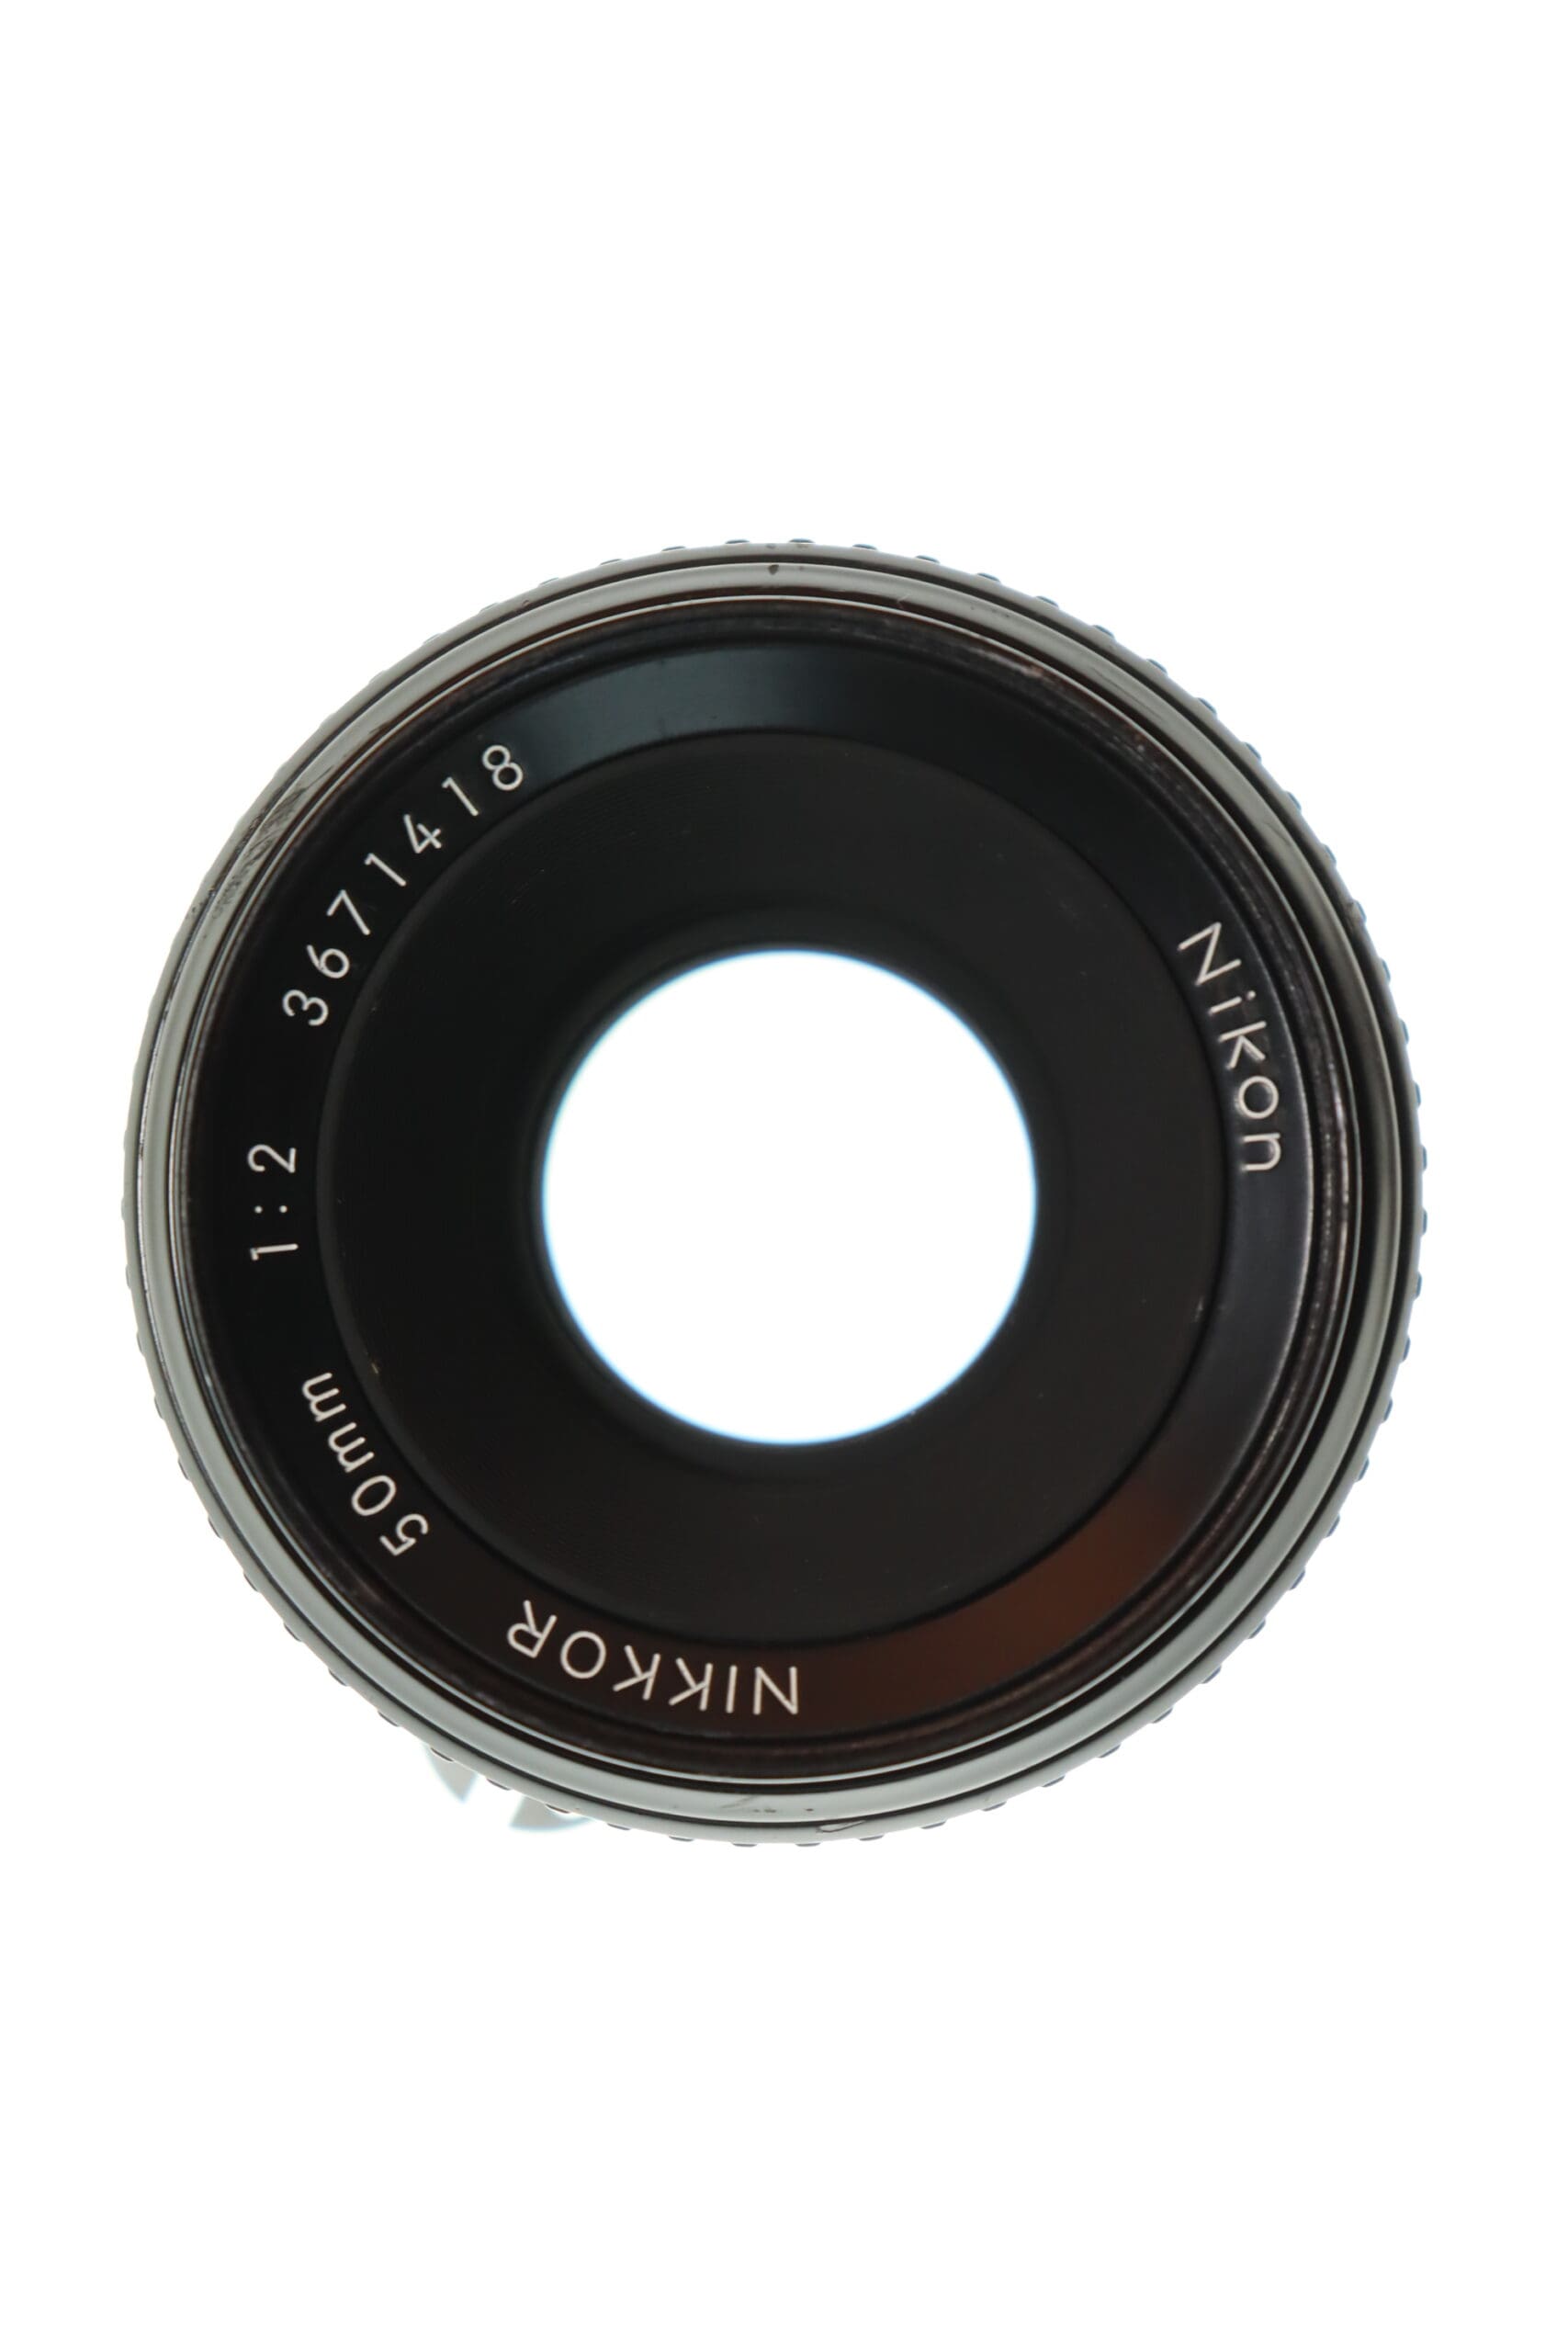 Nikon Nikkor 50mm f/1:2 Lens